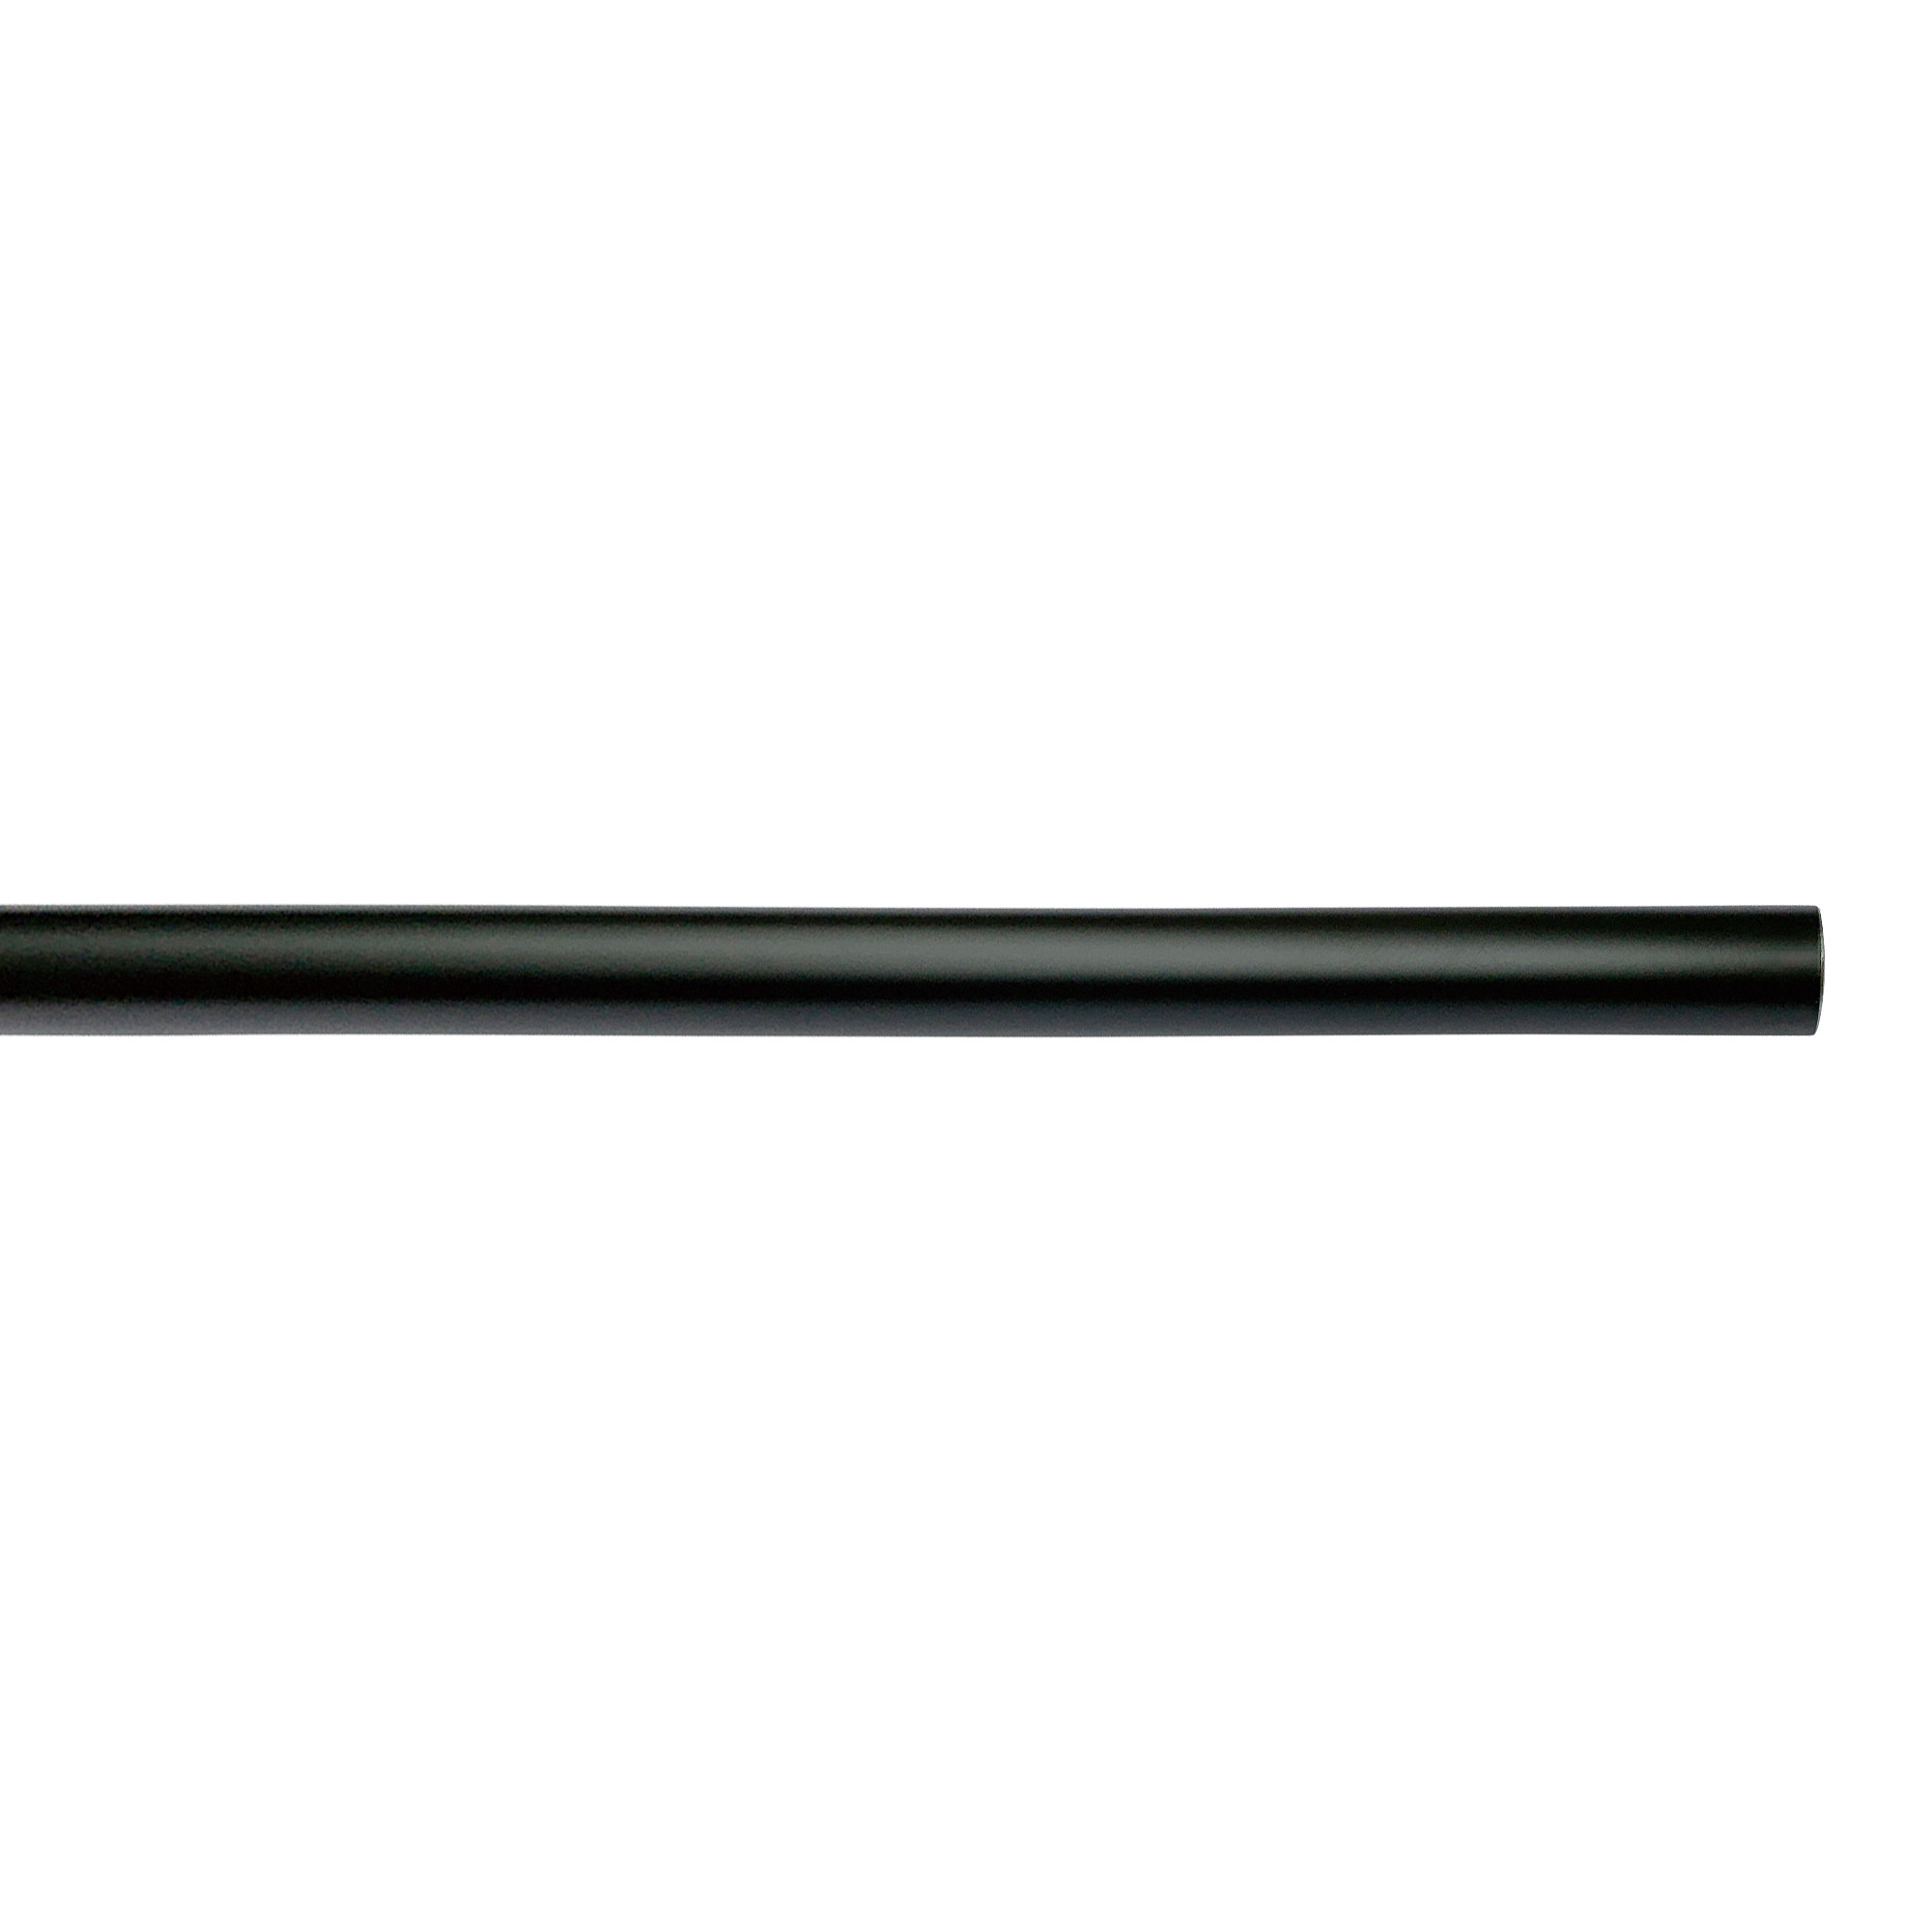 アイアンハンガーパイプ E型-天井吊タイプ H300 ブラック PS-HB008-59-G141 水平パイプは3サイズから2本、それぞれお好きな長さを選択可能です